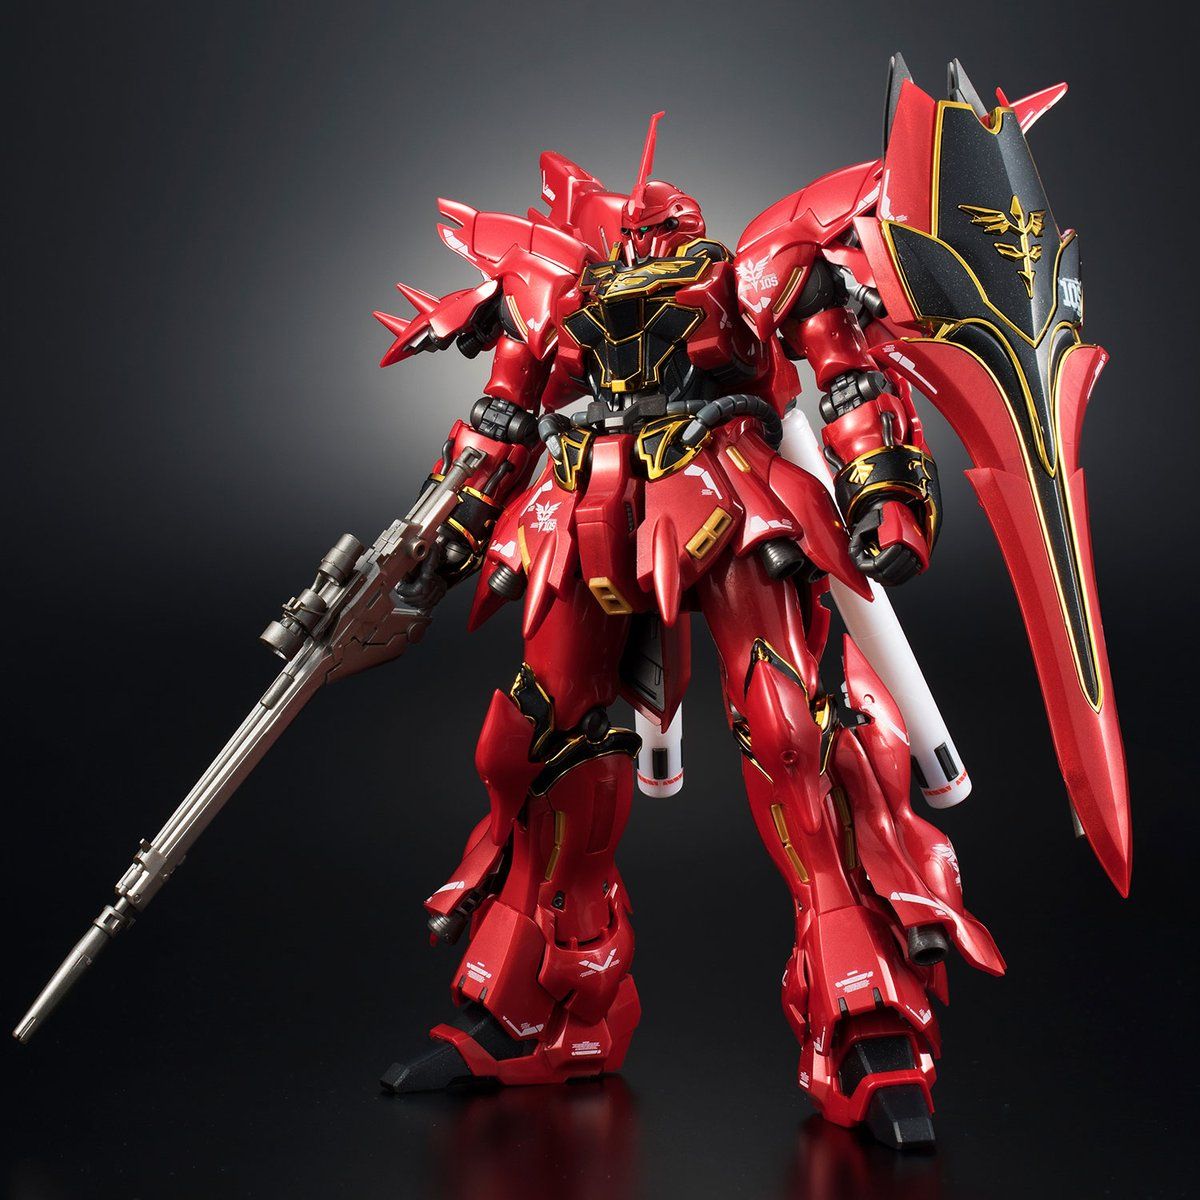 RG 1/144 Gundam Base Limited Sinanju [Metallic Gloss Injection]